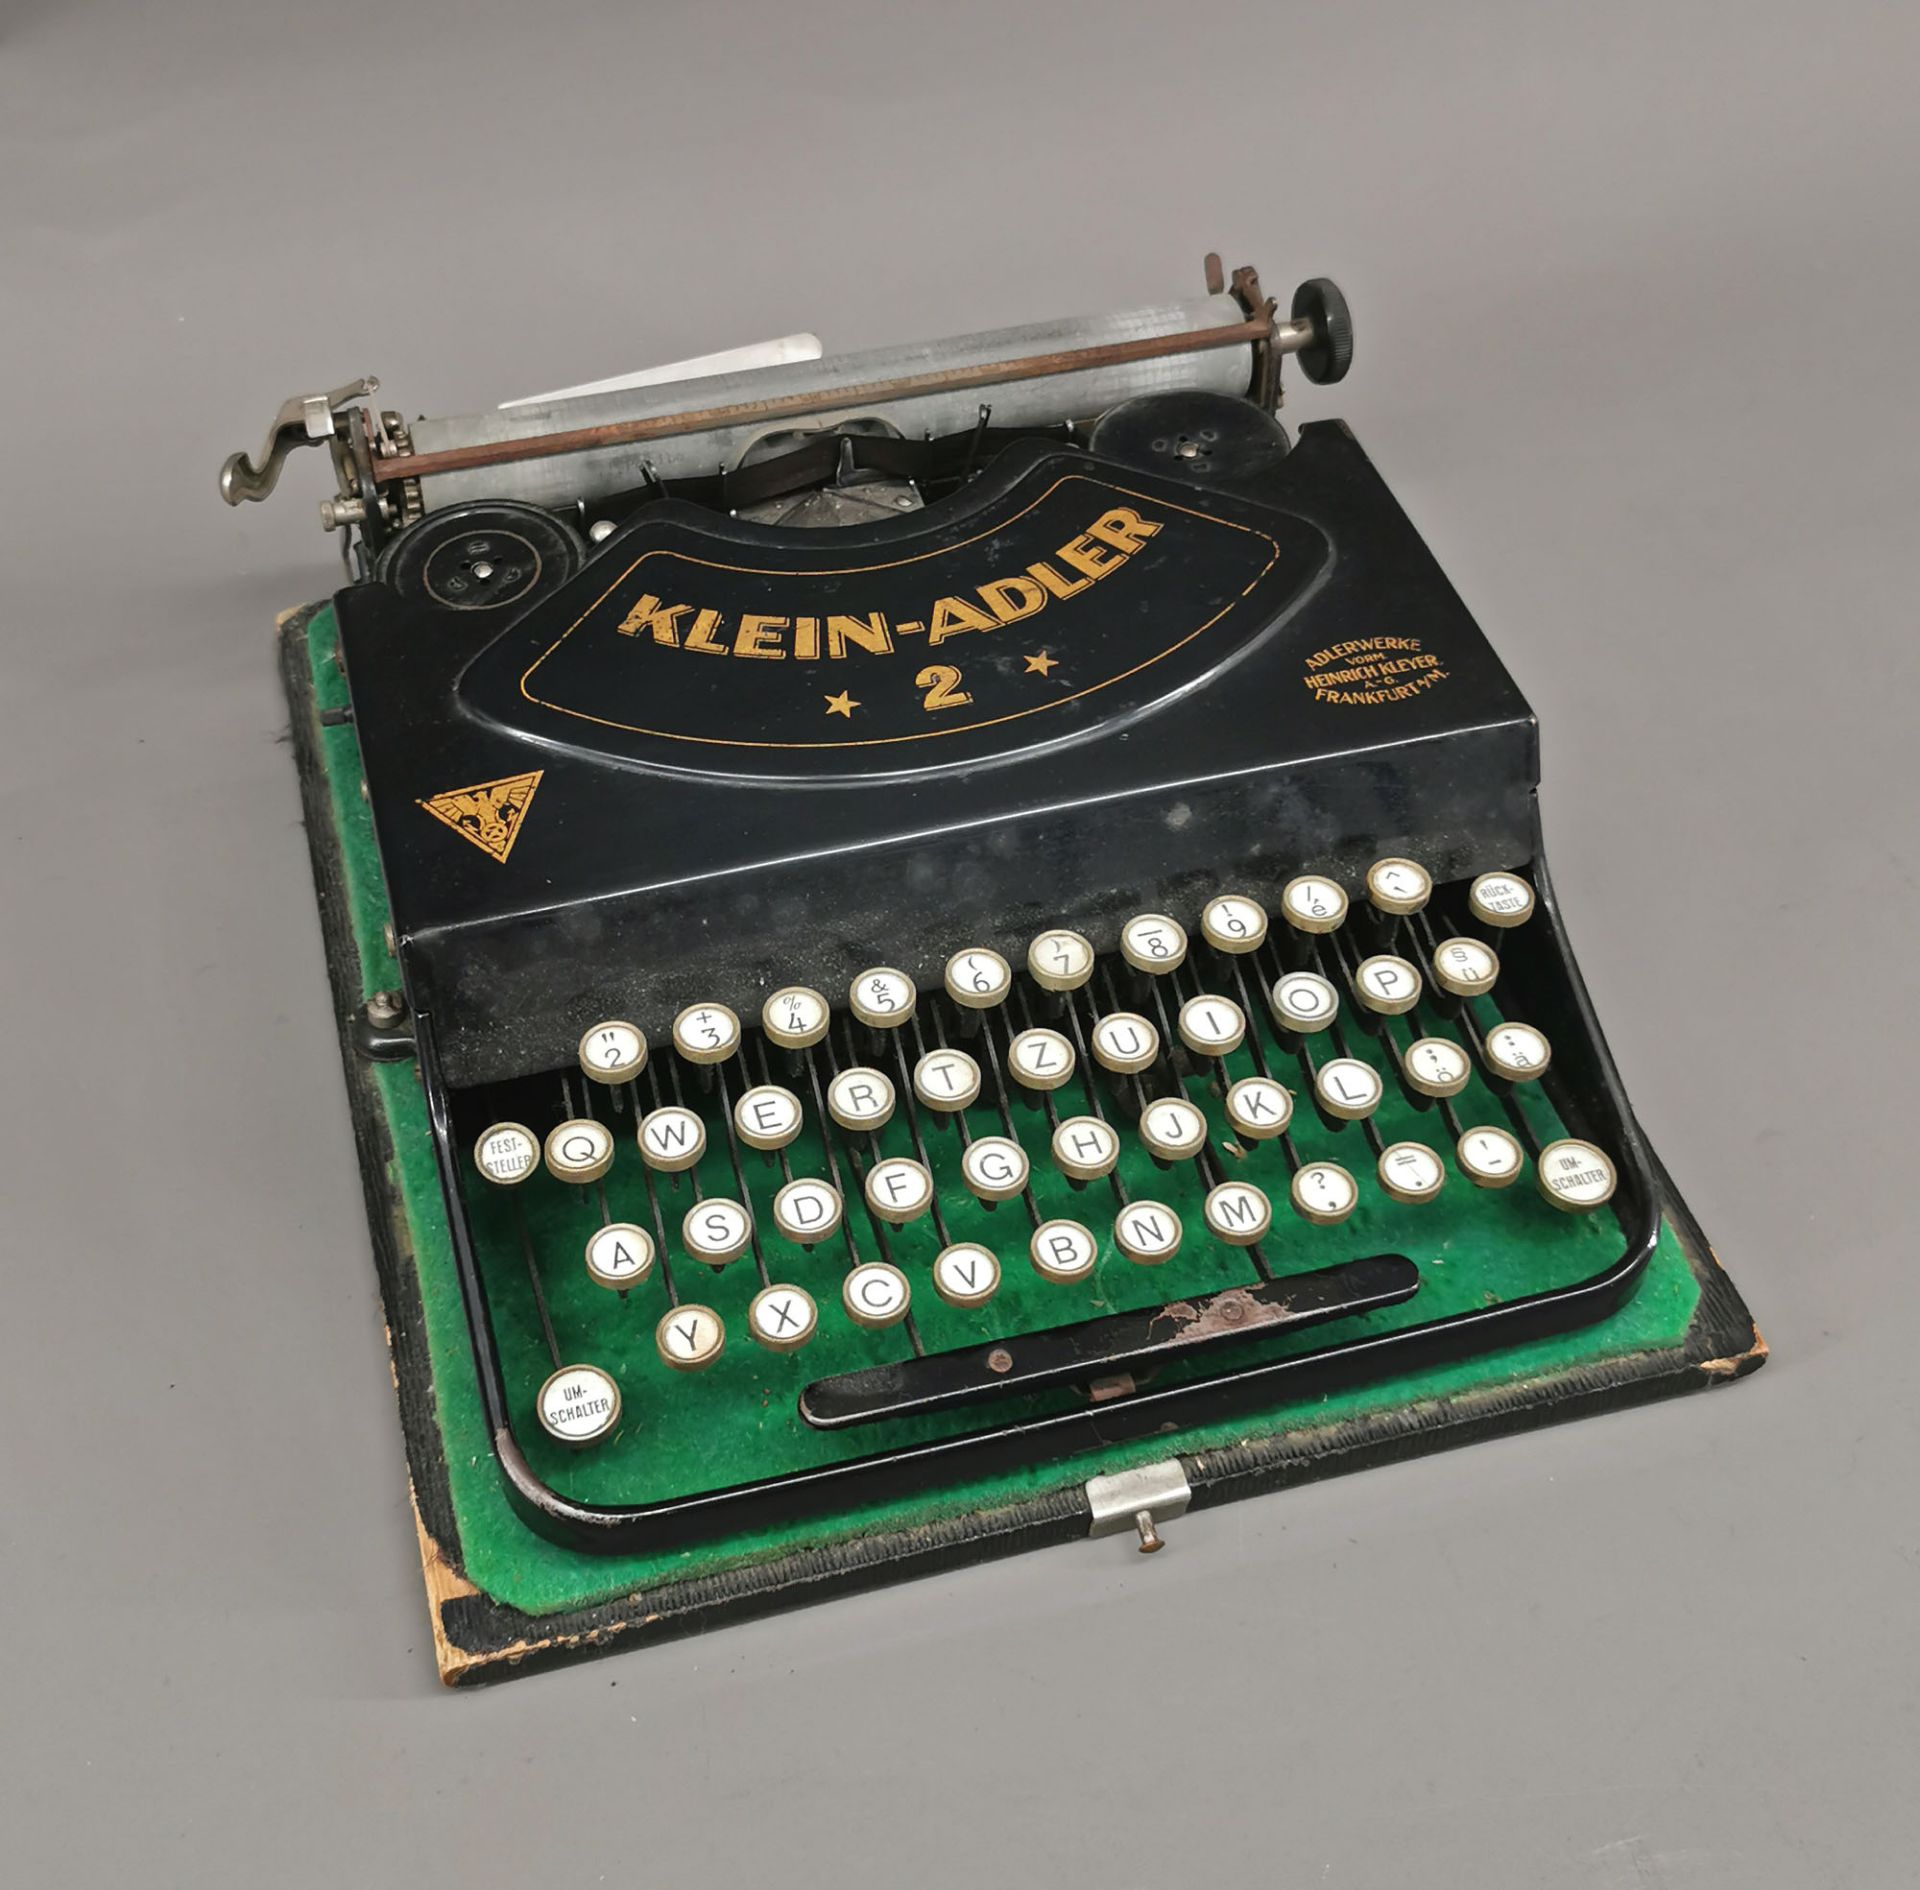 Reise-Schreibmaschine Klein-Adler 2 - Image 3 of 6